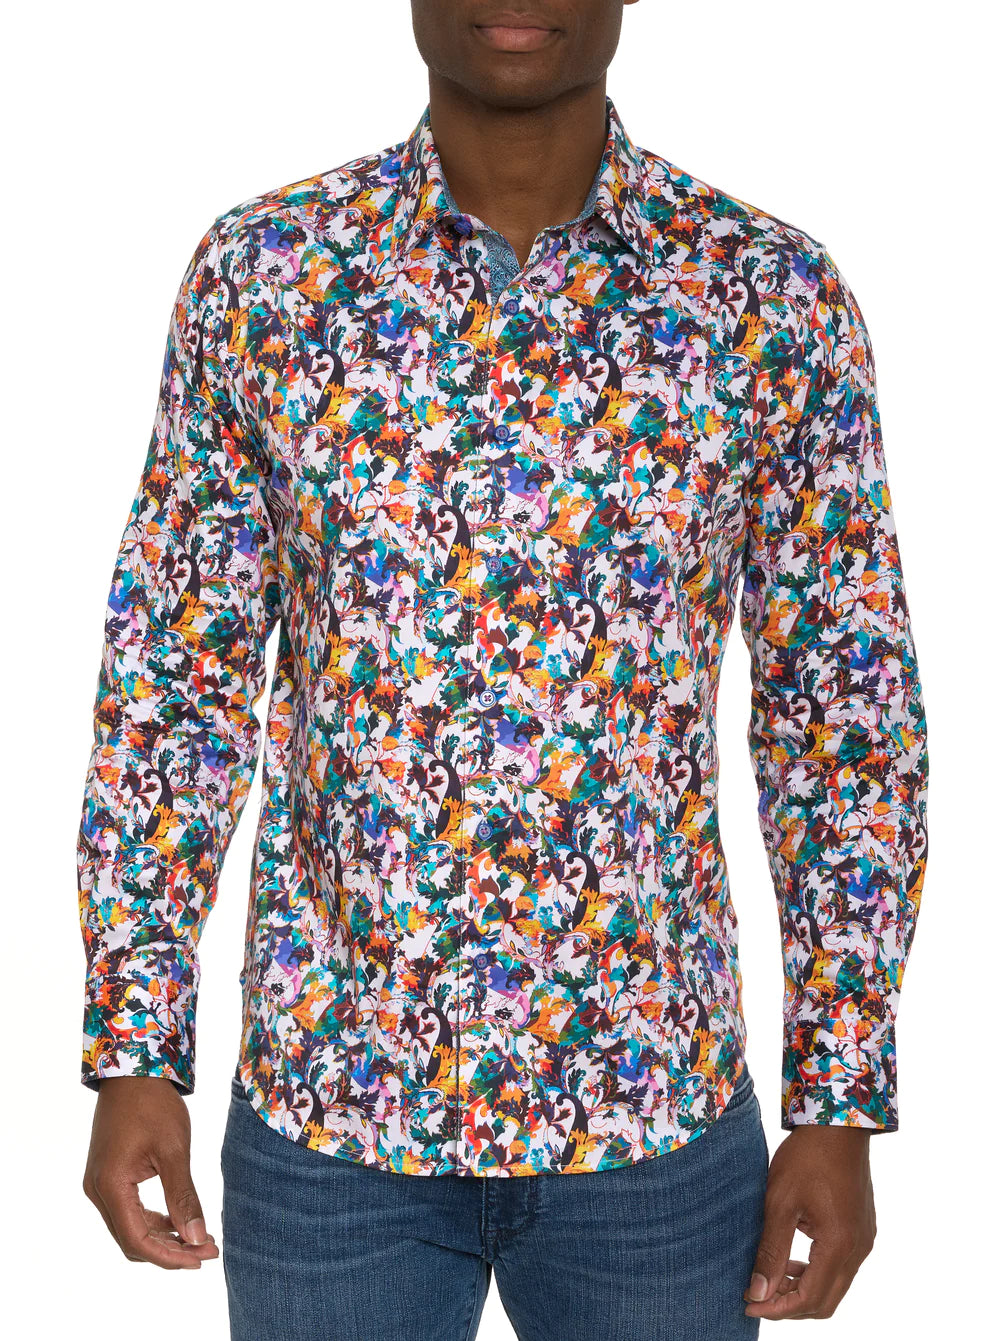 Robert Graham Como Button Up L/S Dress Shirt - Multi - 1 - Tops - Button Up Dress Shirt